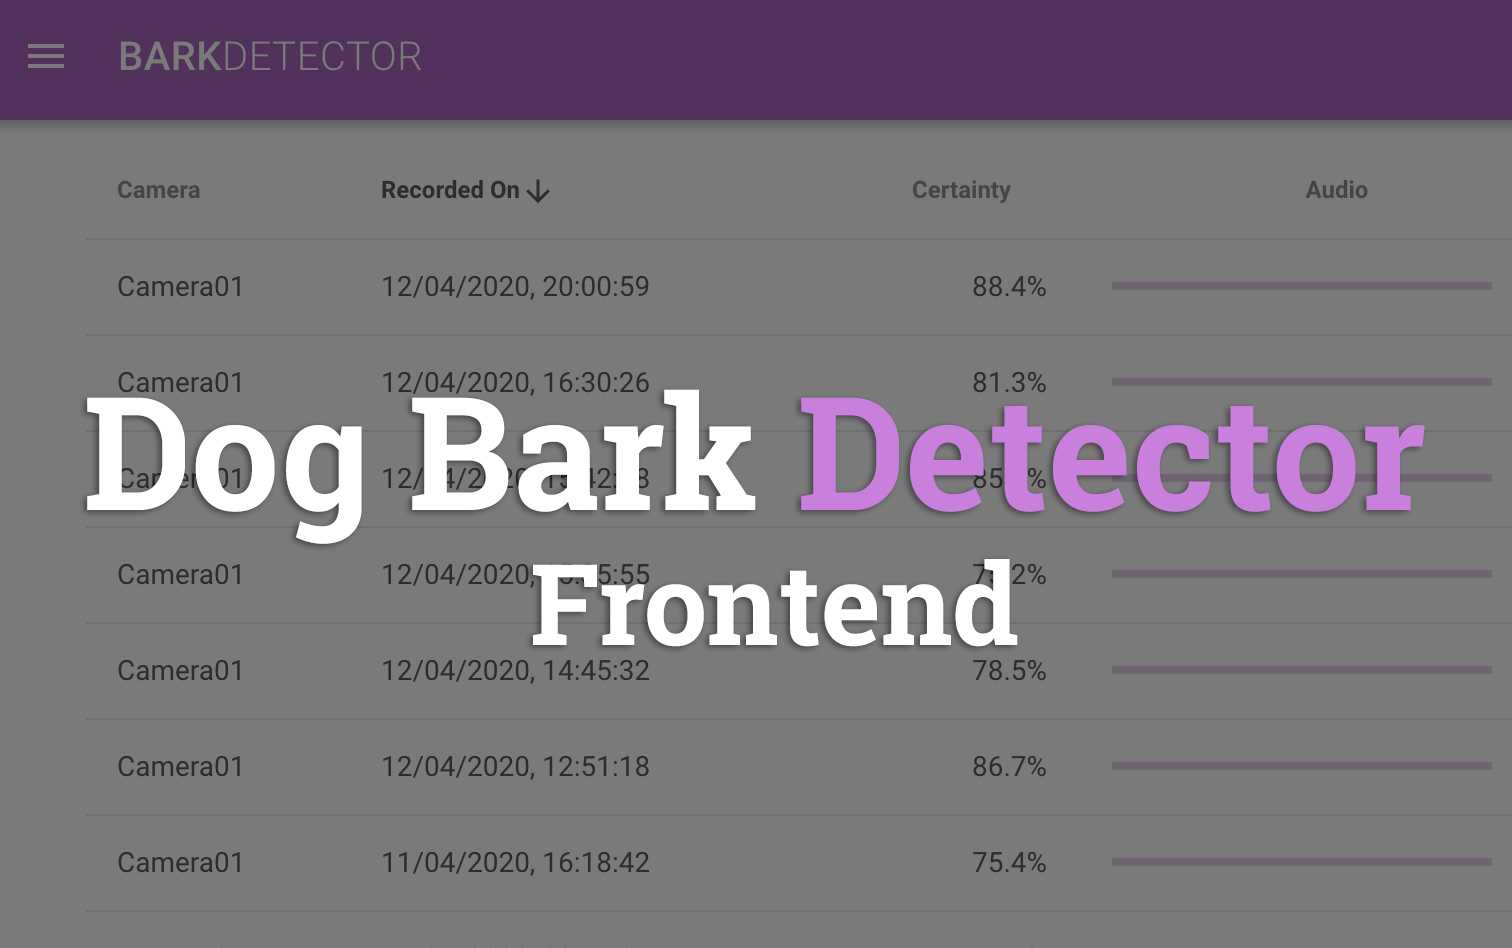 Dog Bark Detector - Frontend